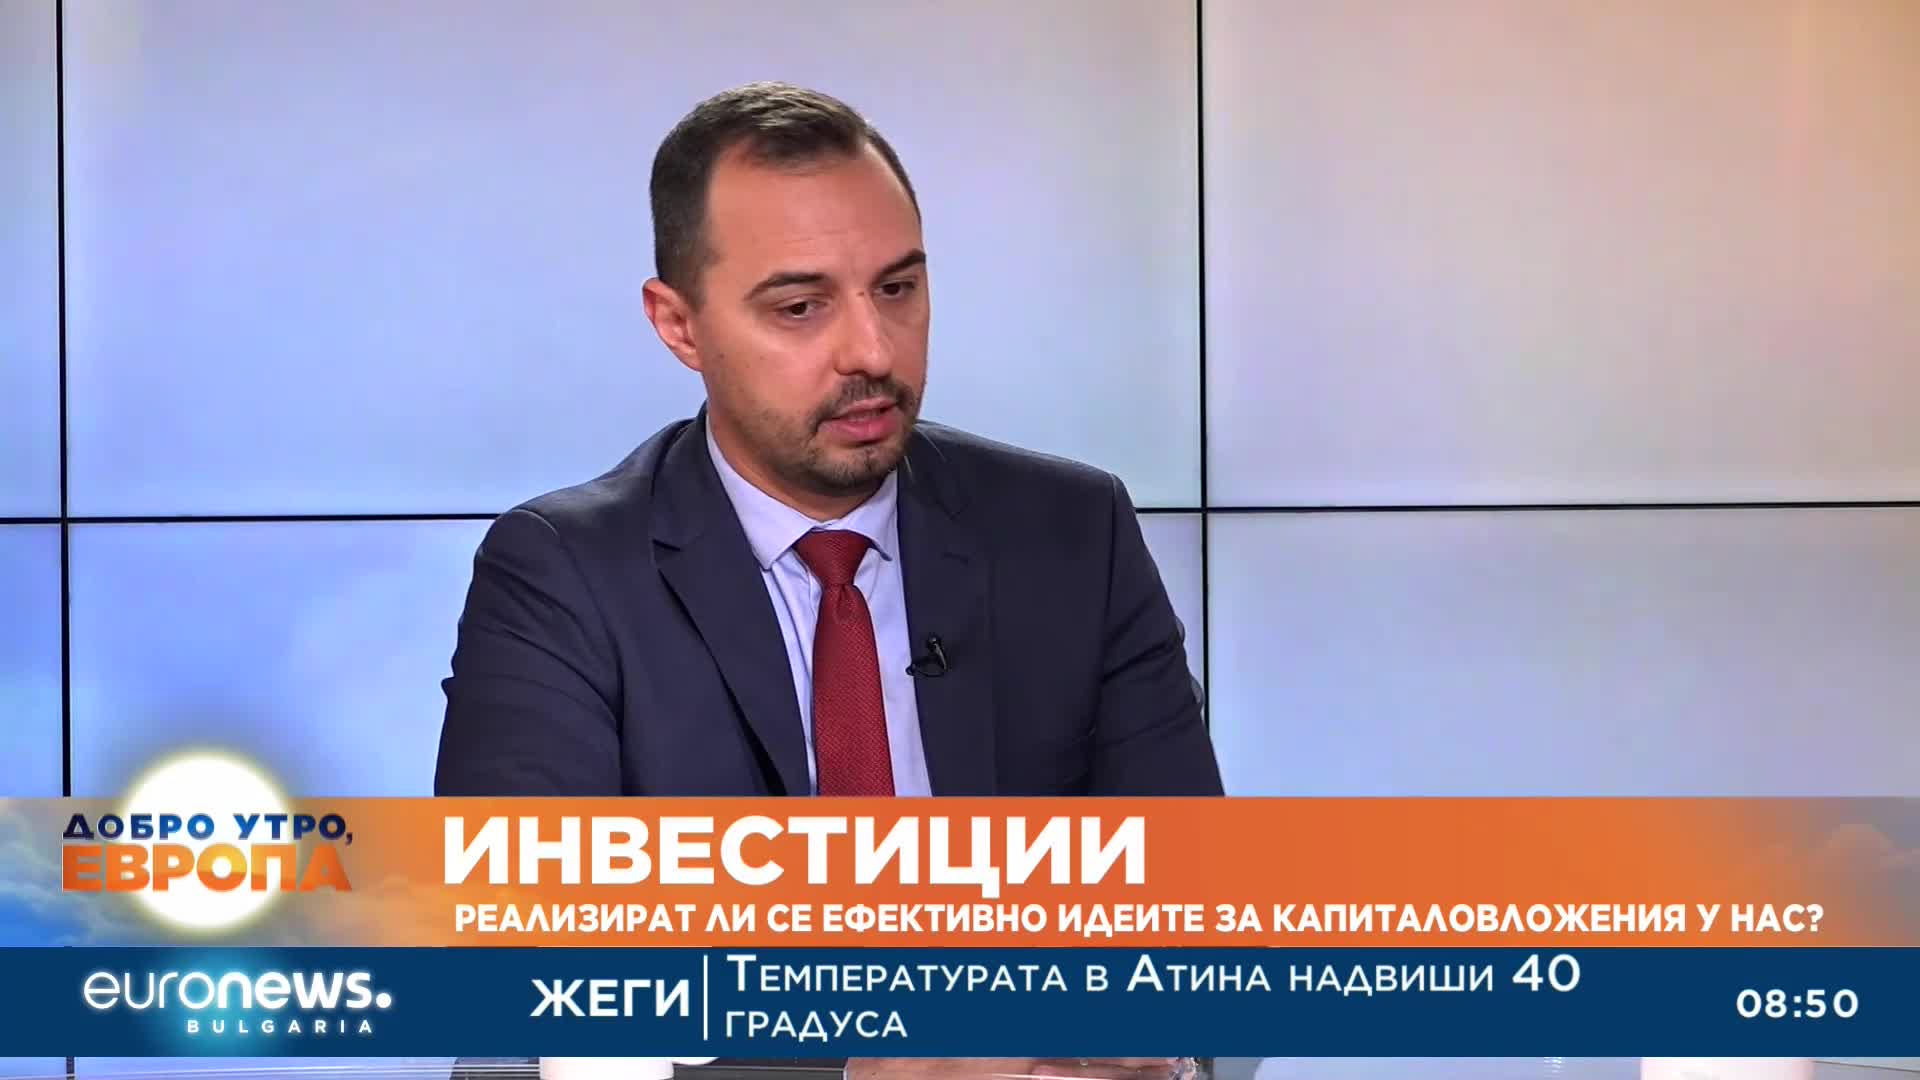 Богдан Богданов: 200% е ръстът на чужди инвестиции у нас до май, индустрията расте